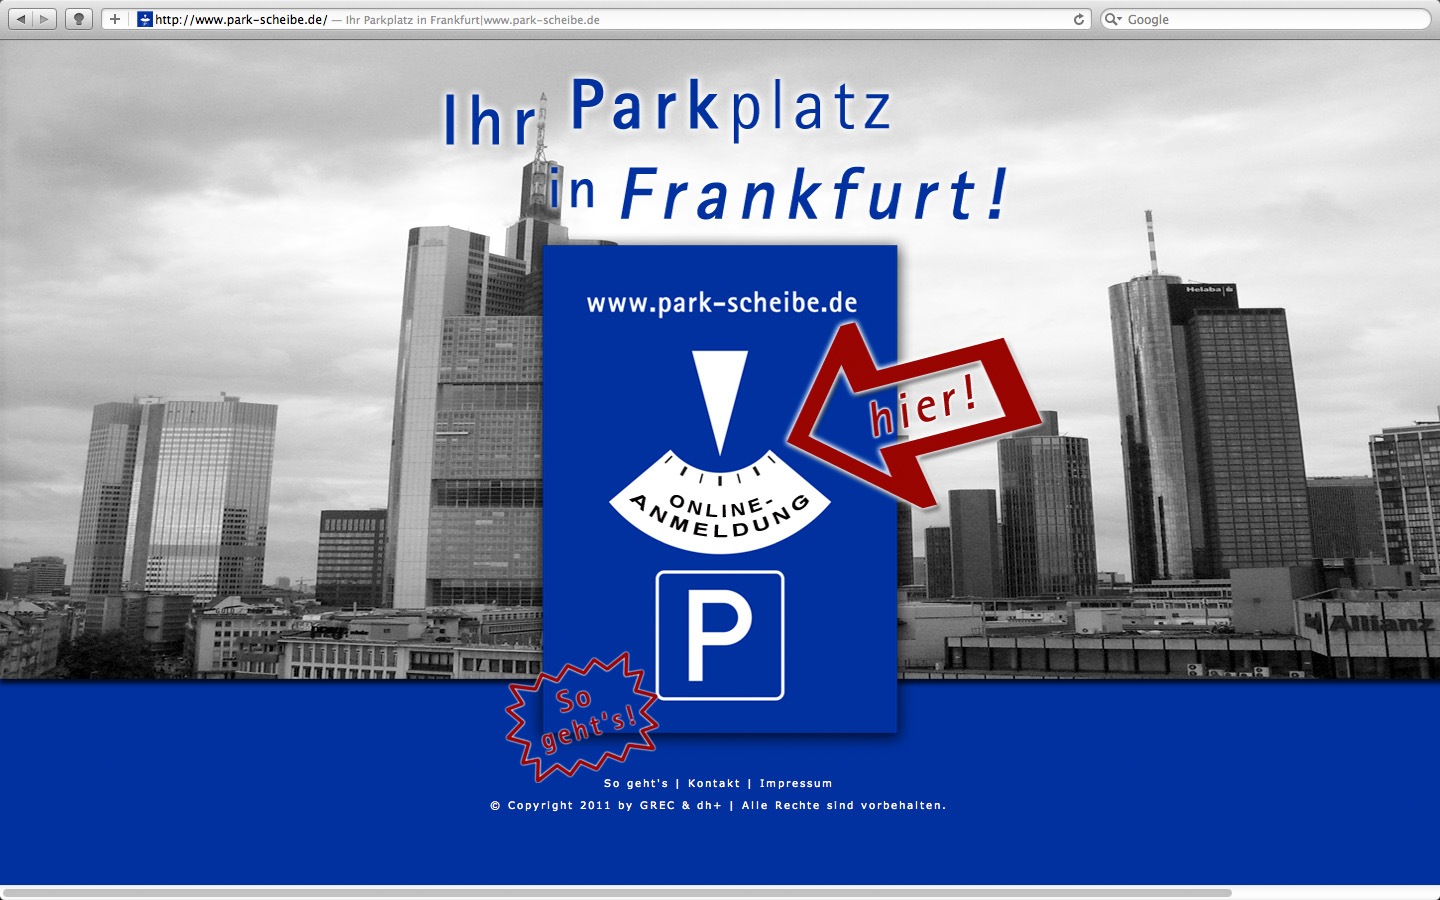 park-scheibe.de | website